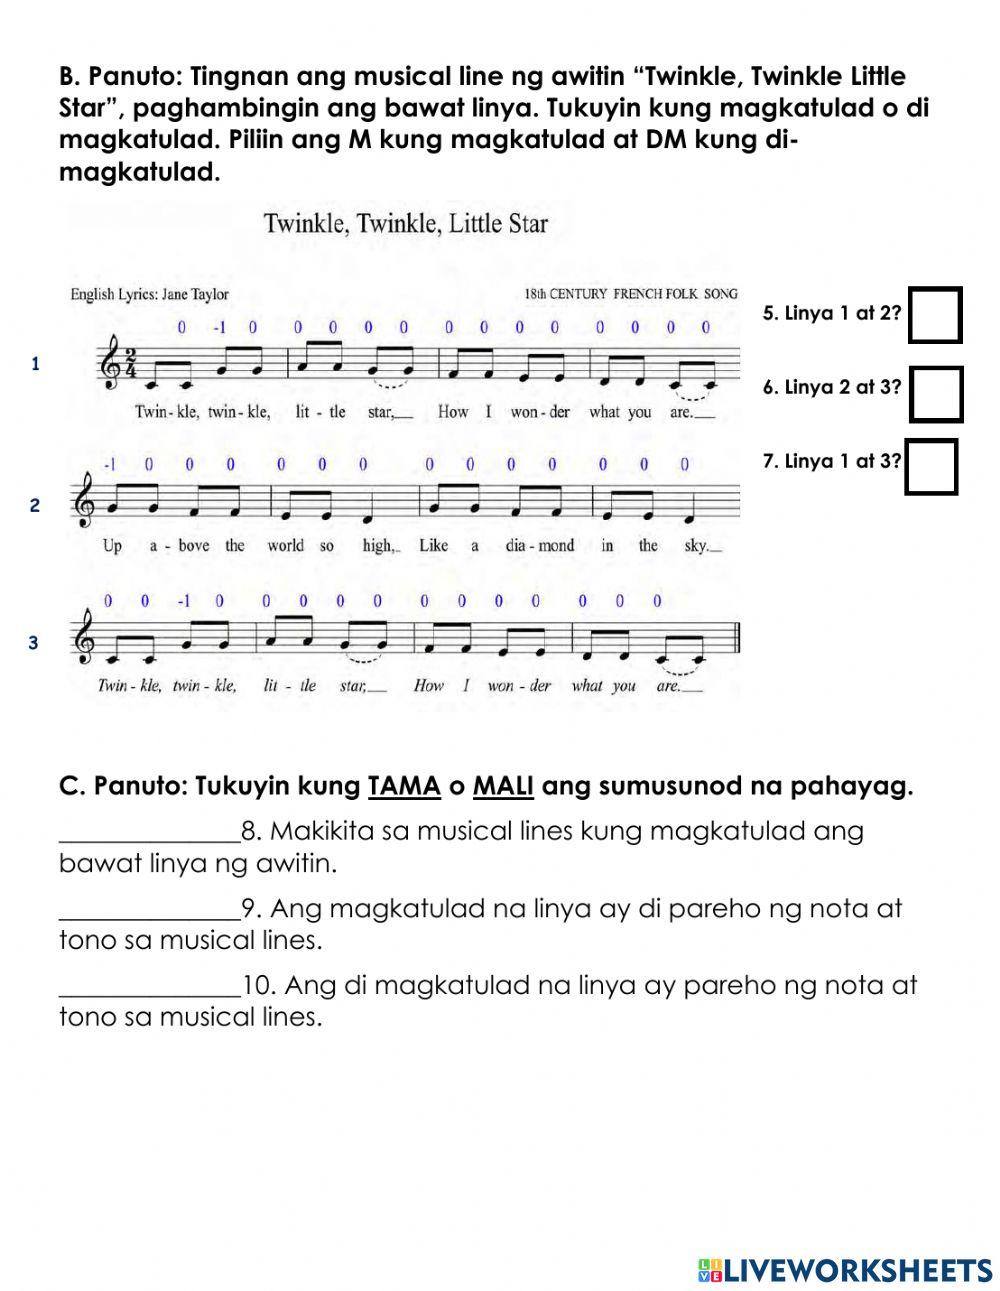 MAPEH Music - Magkatulad at Di Magkatulad